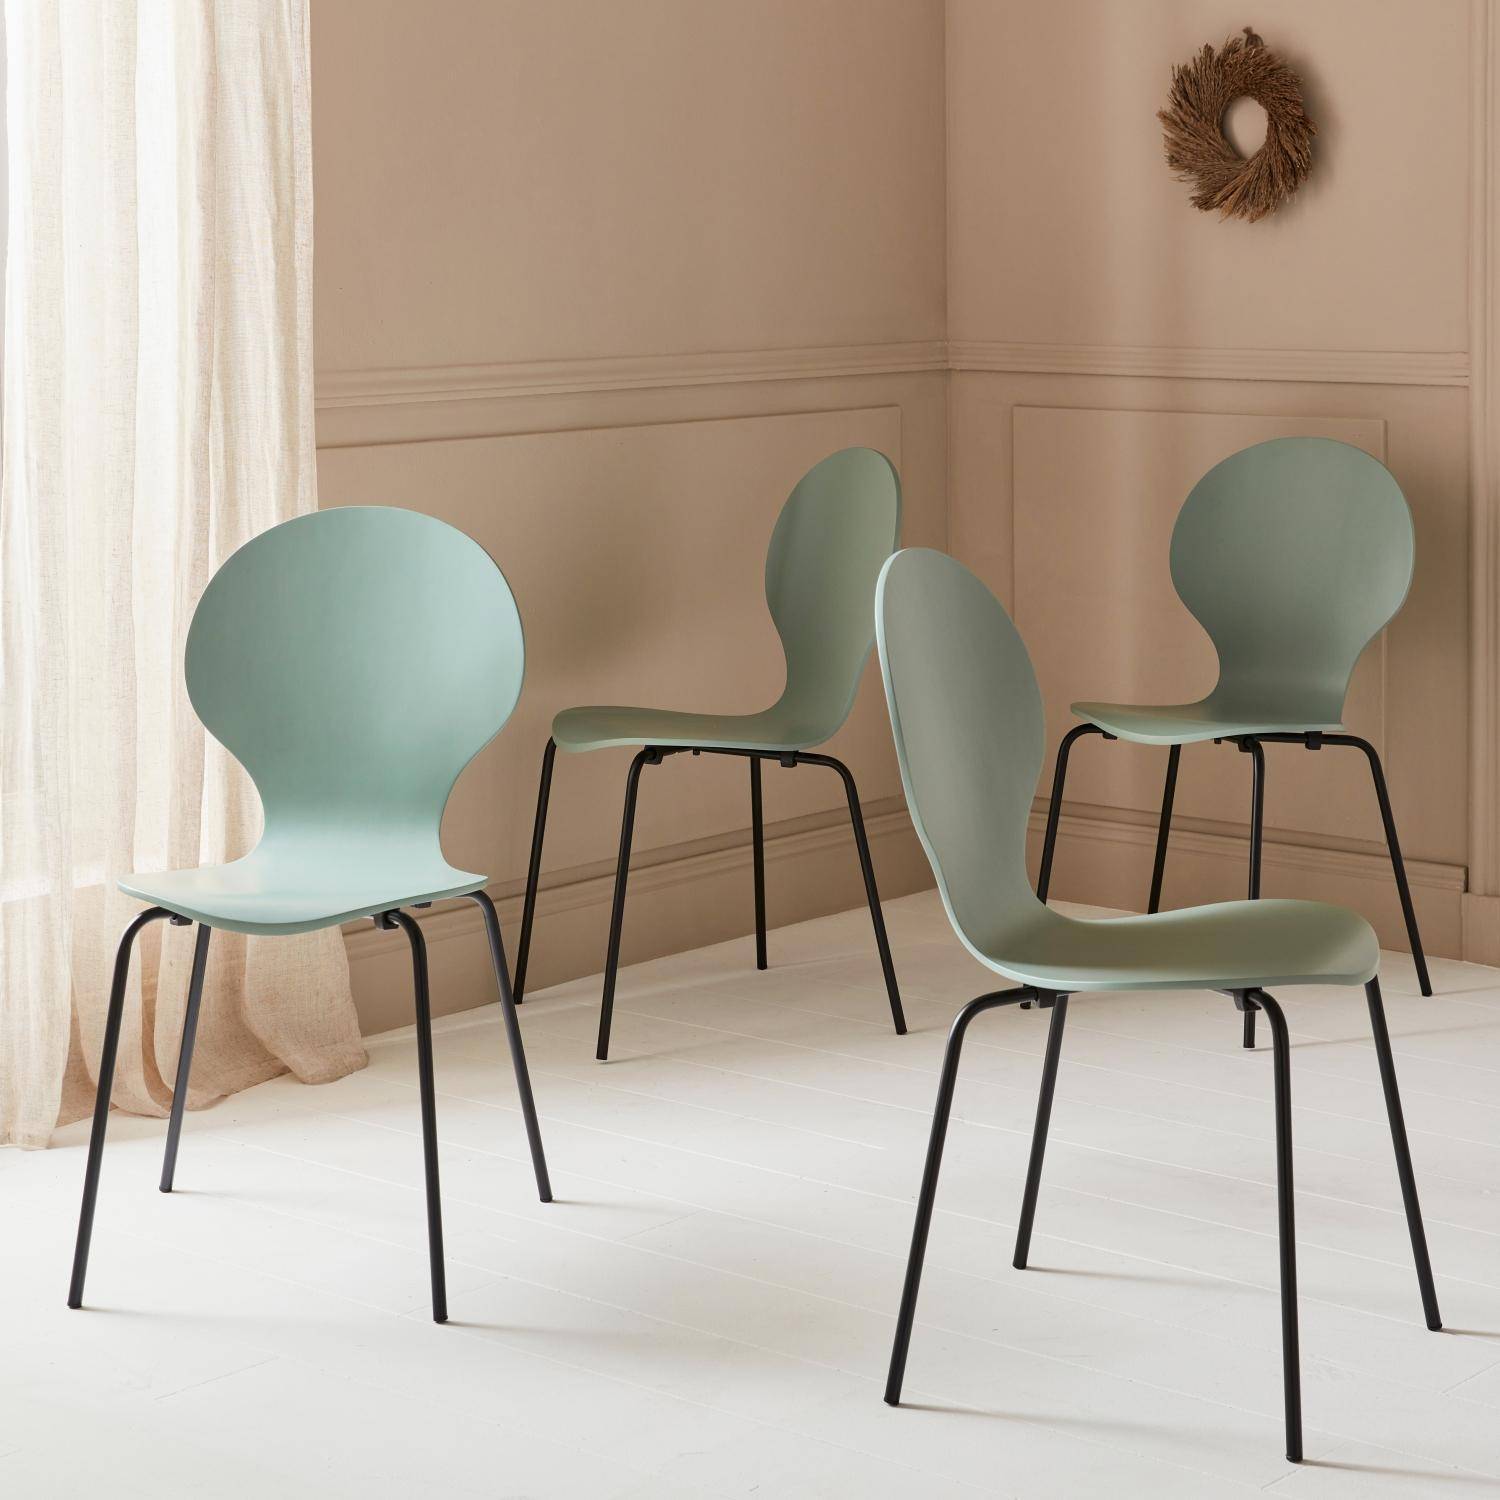 Conjunto de 4 cadeiras empilháveis retro verde celadon, madeira de seringueira e contraplacado, pernas de aço, Naomi, L 43 x P 48 x A 87 cm Photo8